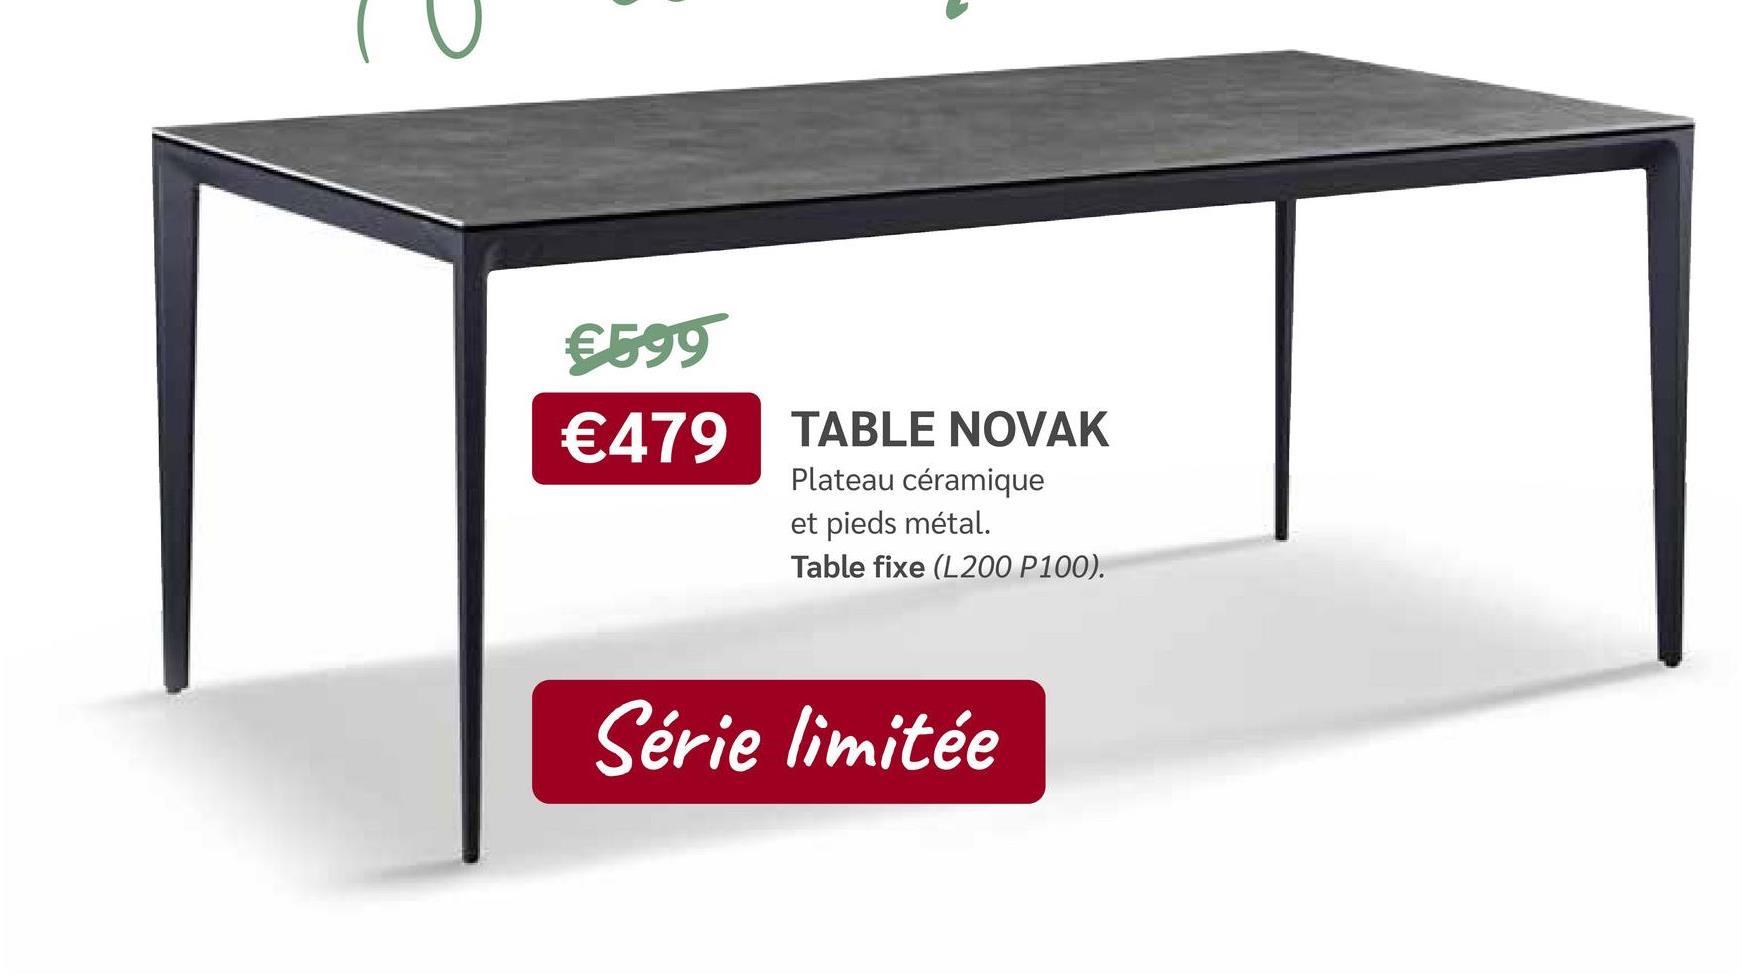 €599
€479 TABLE NOVAK
Plateau céramique
et pieds métal.
Table fixe (L200 P100).
Série limitée